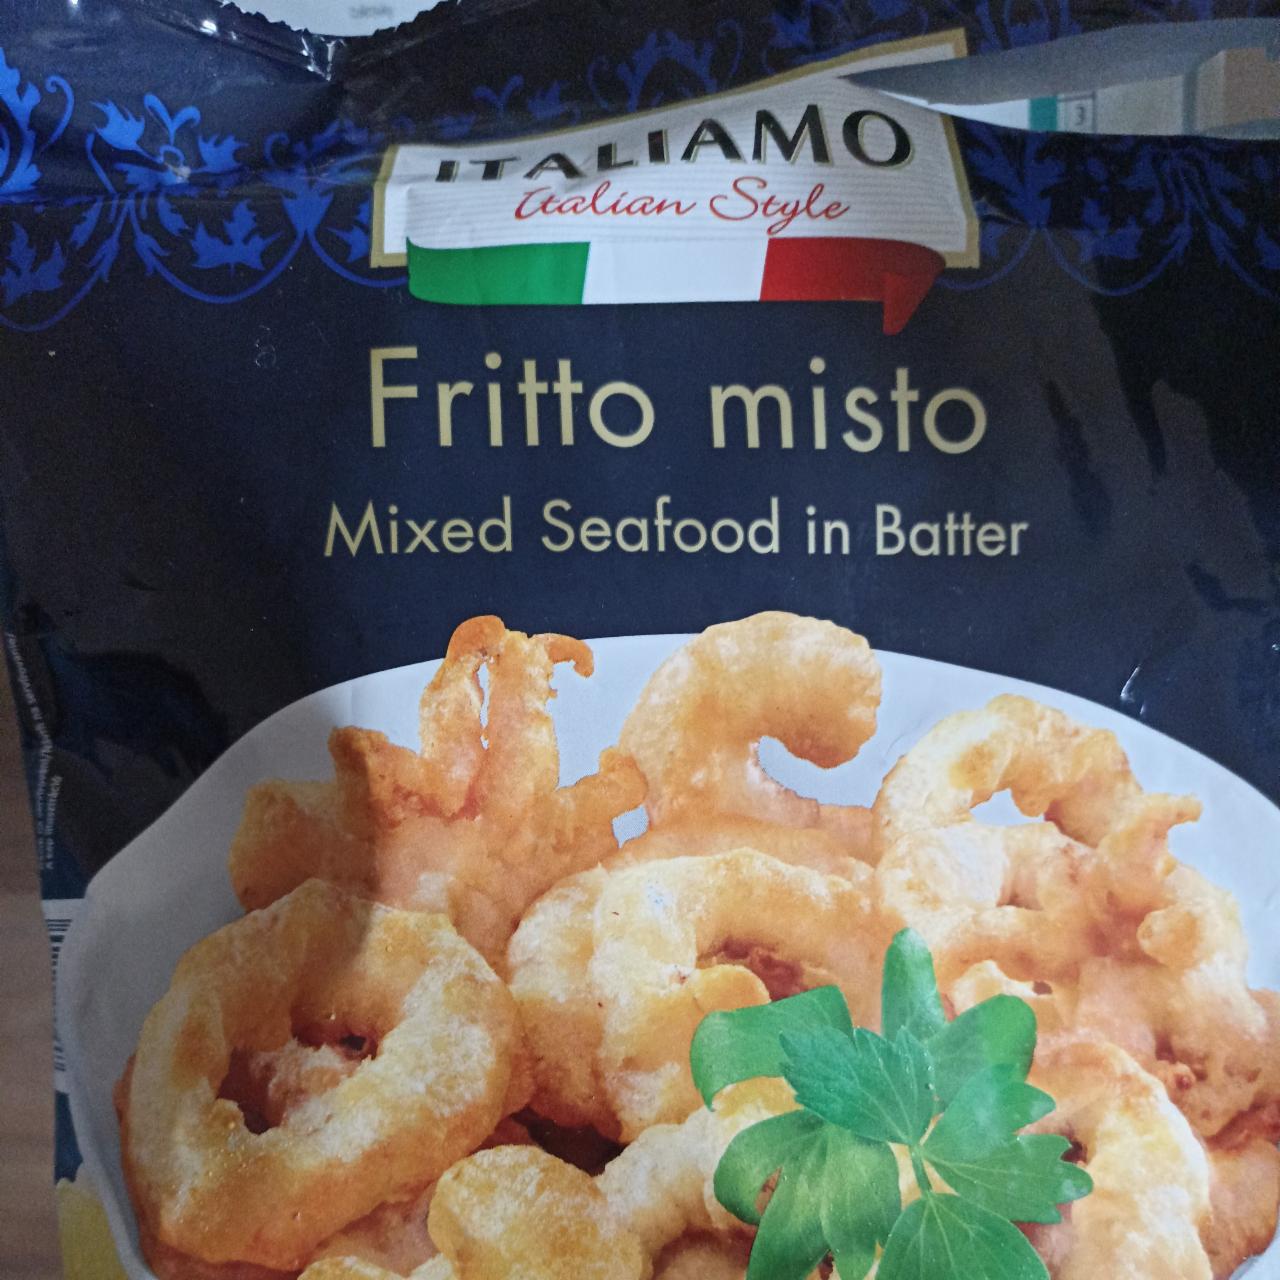 Fotografie - obalované mořské plody Italiamo